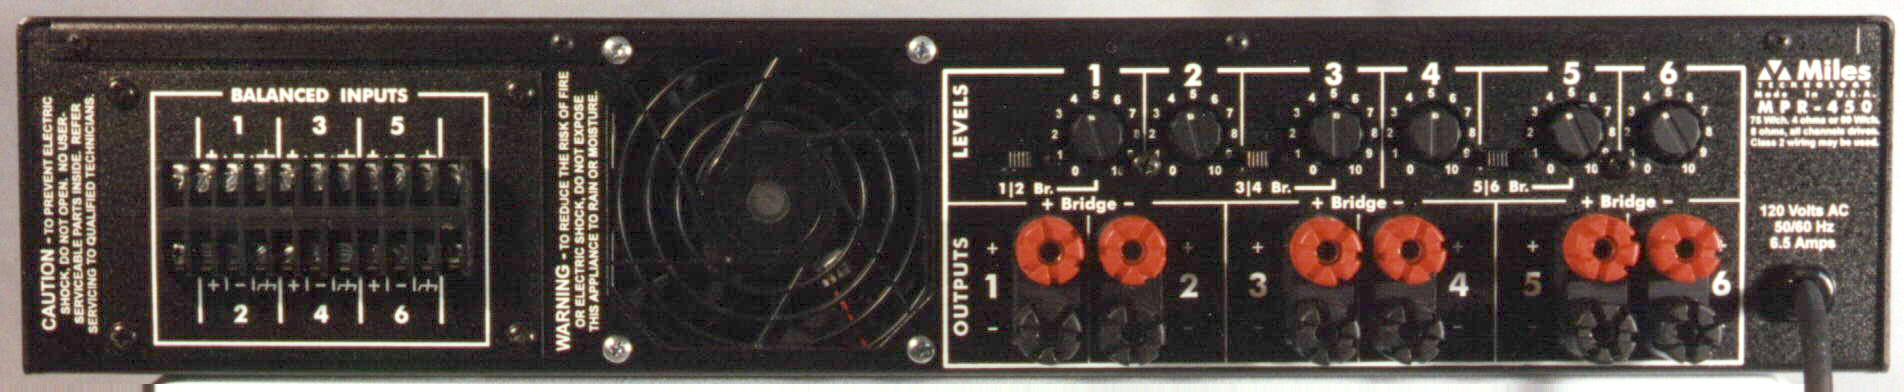 MPR-450 Six-Channel Amplifier Back